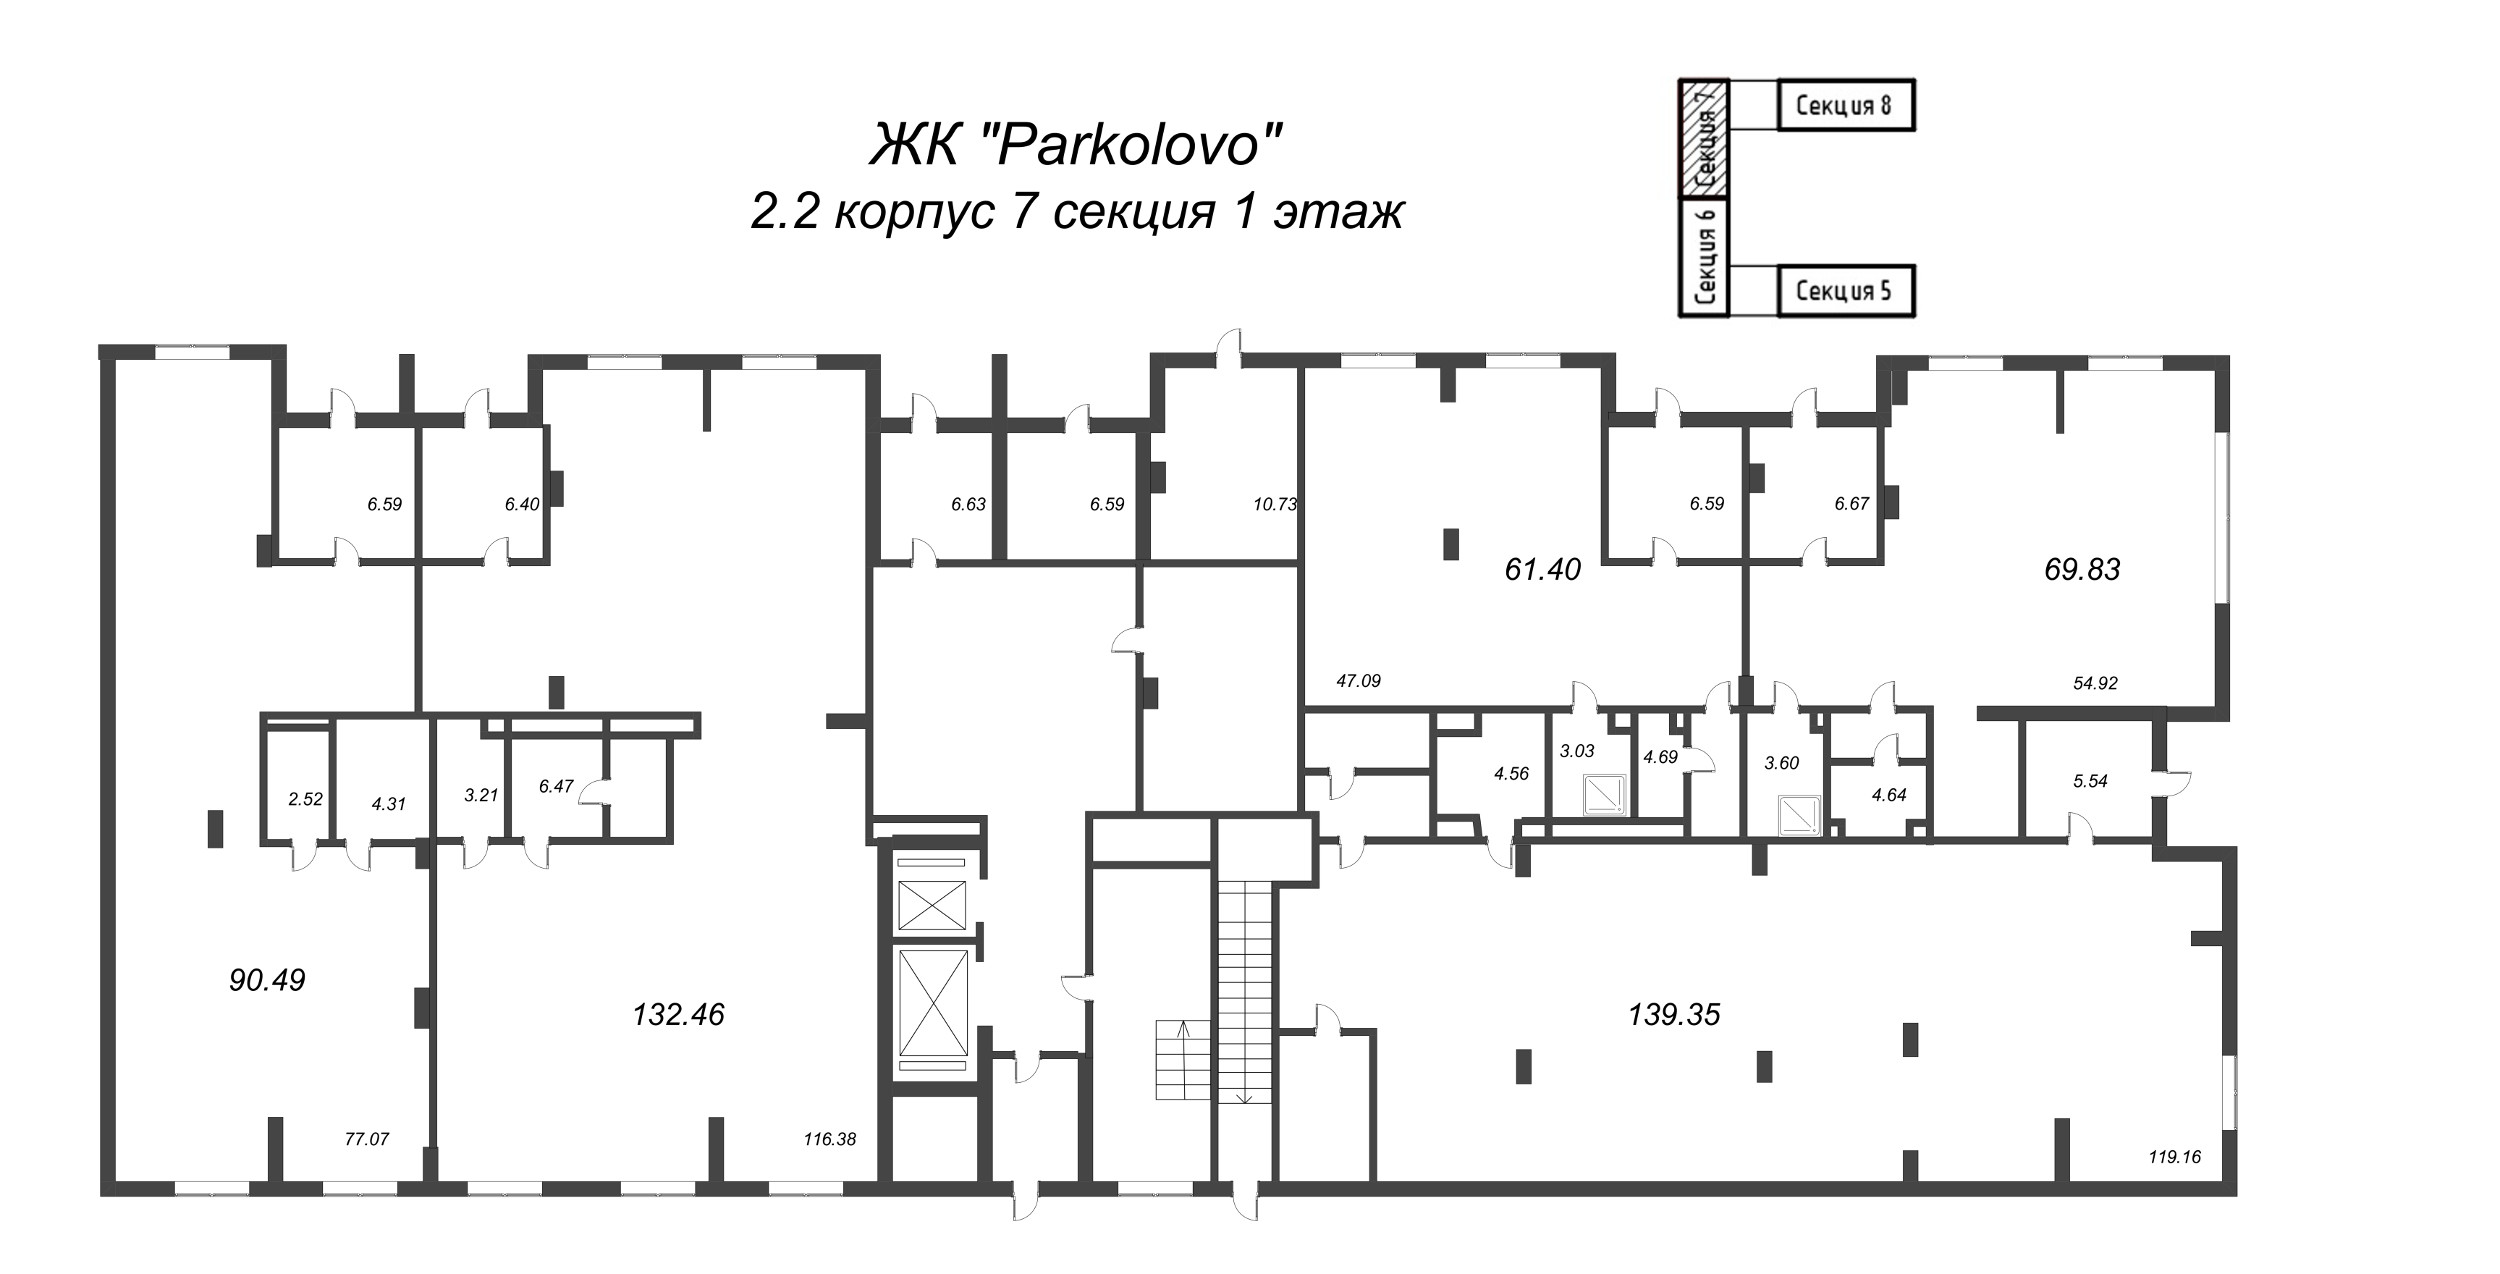 Помещение, 90.49 м² в ЖК "Parkolovo" - планировка этажа